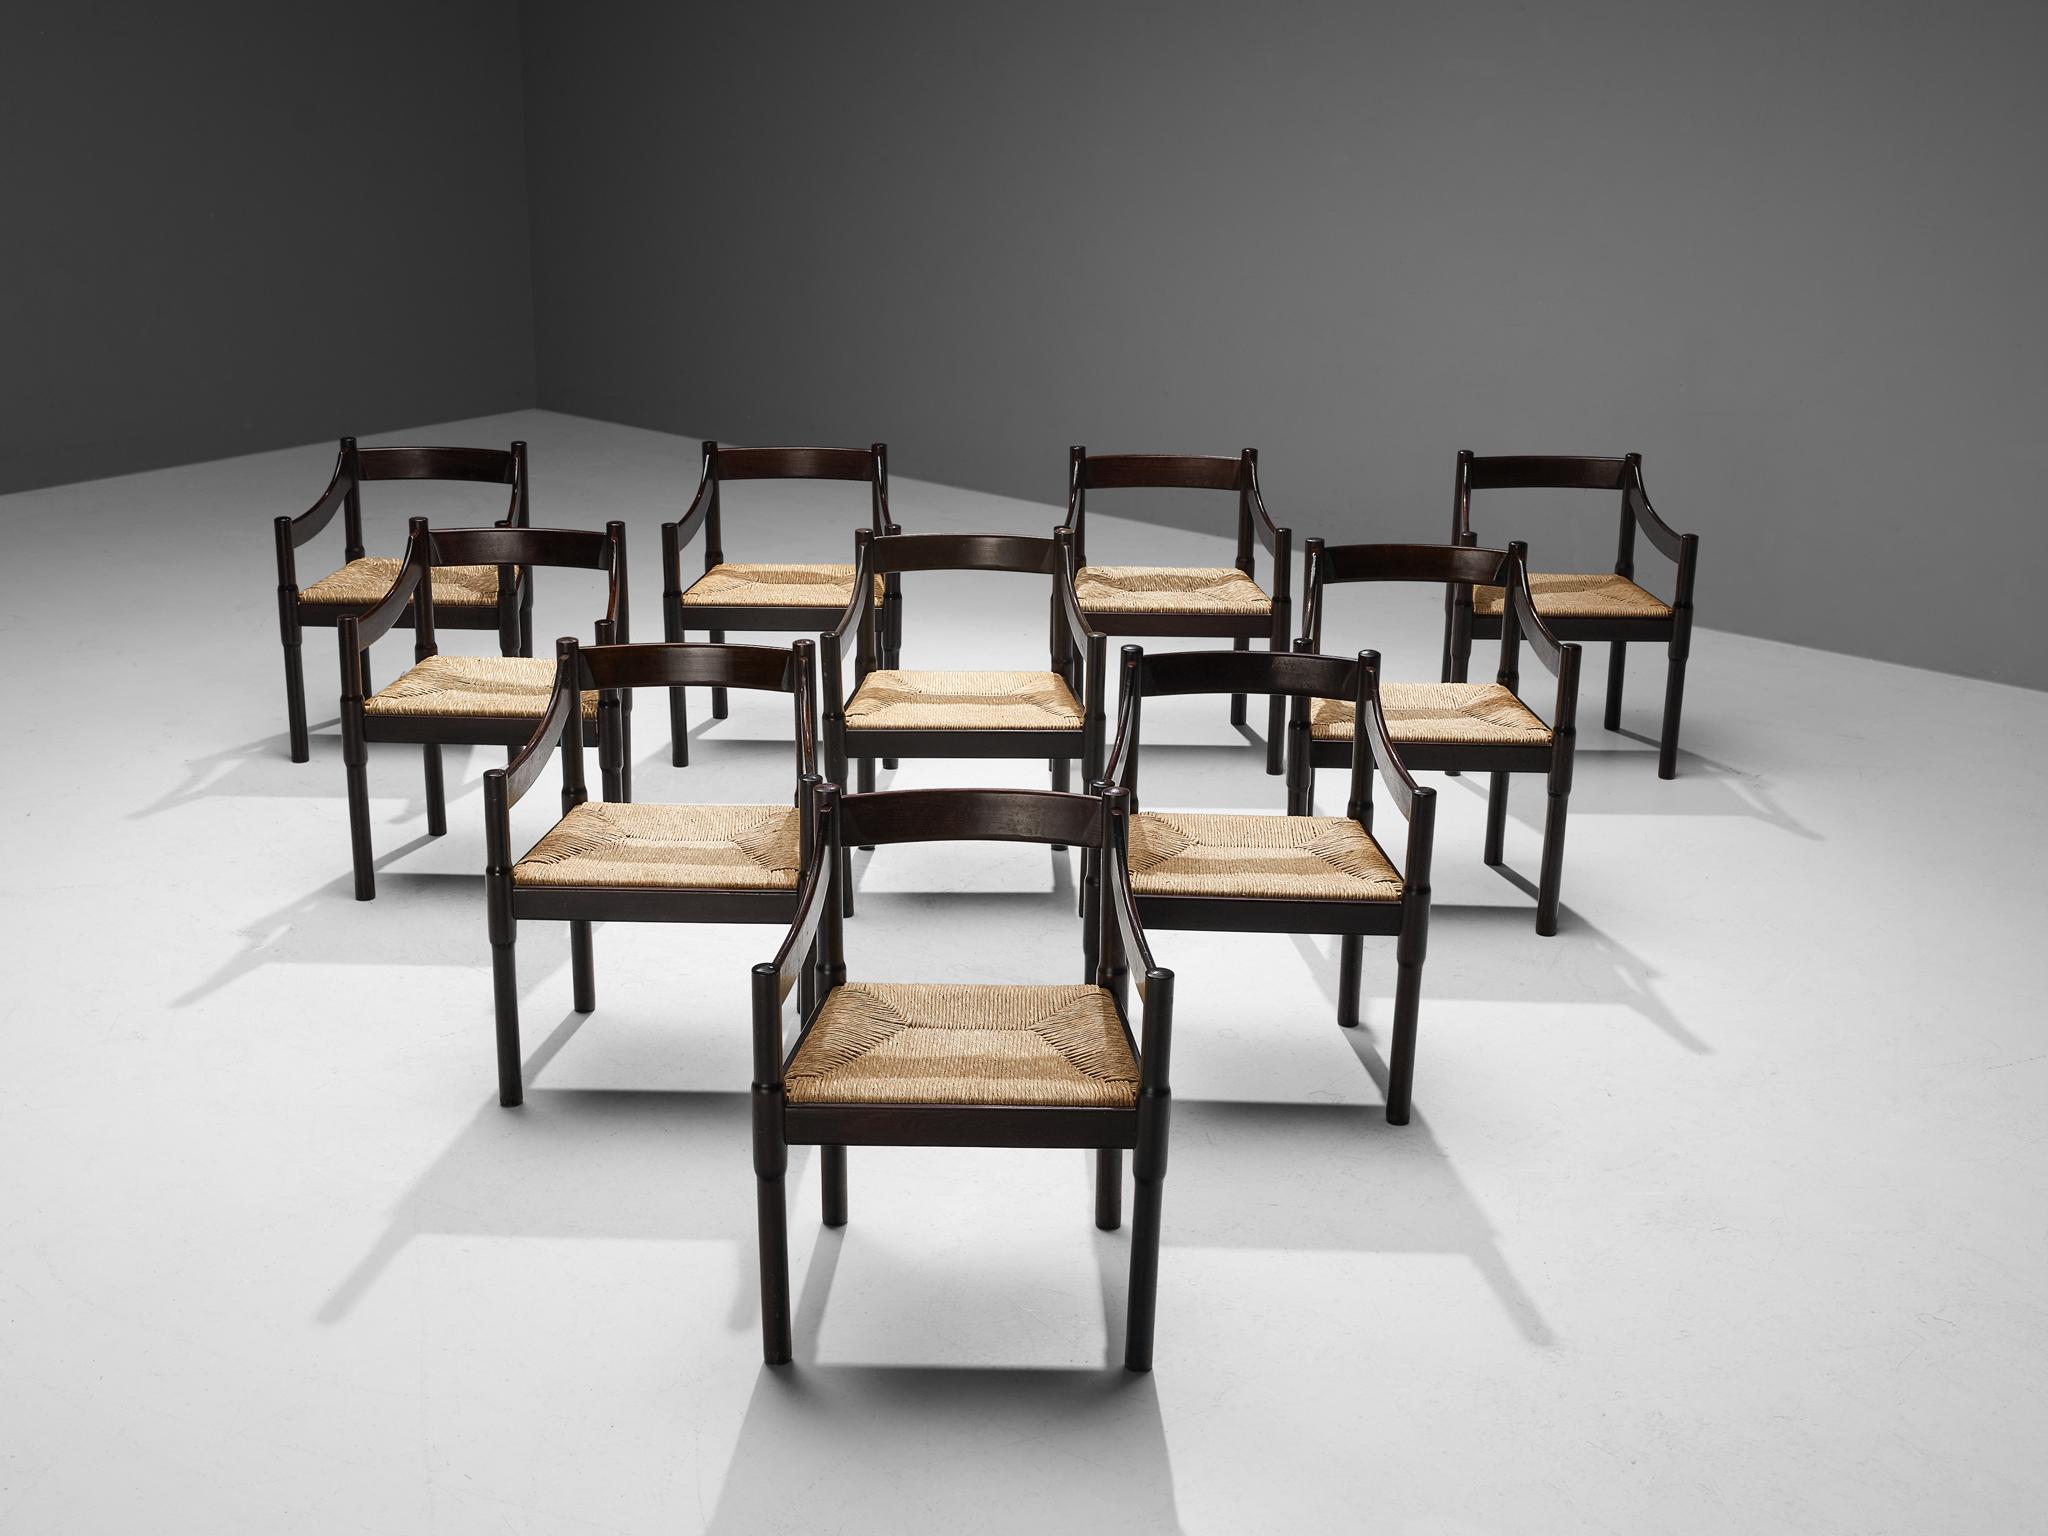 Vico Magistretti, ensemble de dix chaises de salle à manger modèle 'Carimate', hêtre teinté, osier paille, Italie, conçu vers 1960.

La chaise 